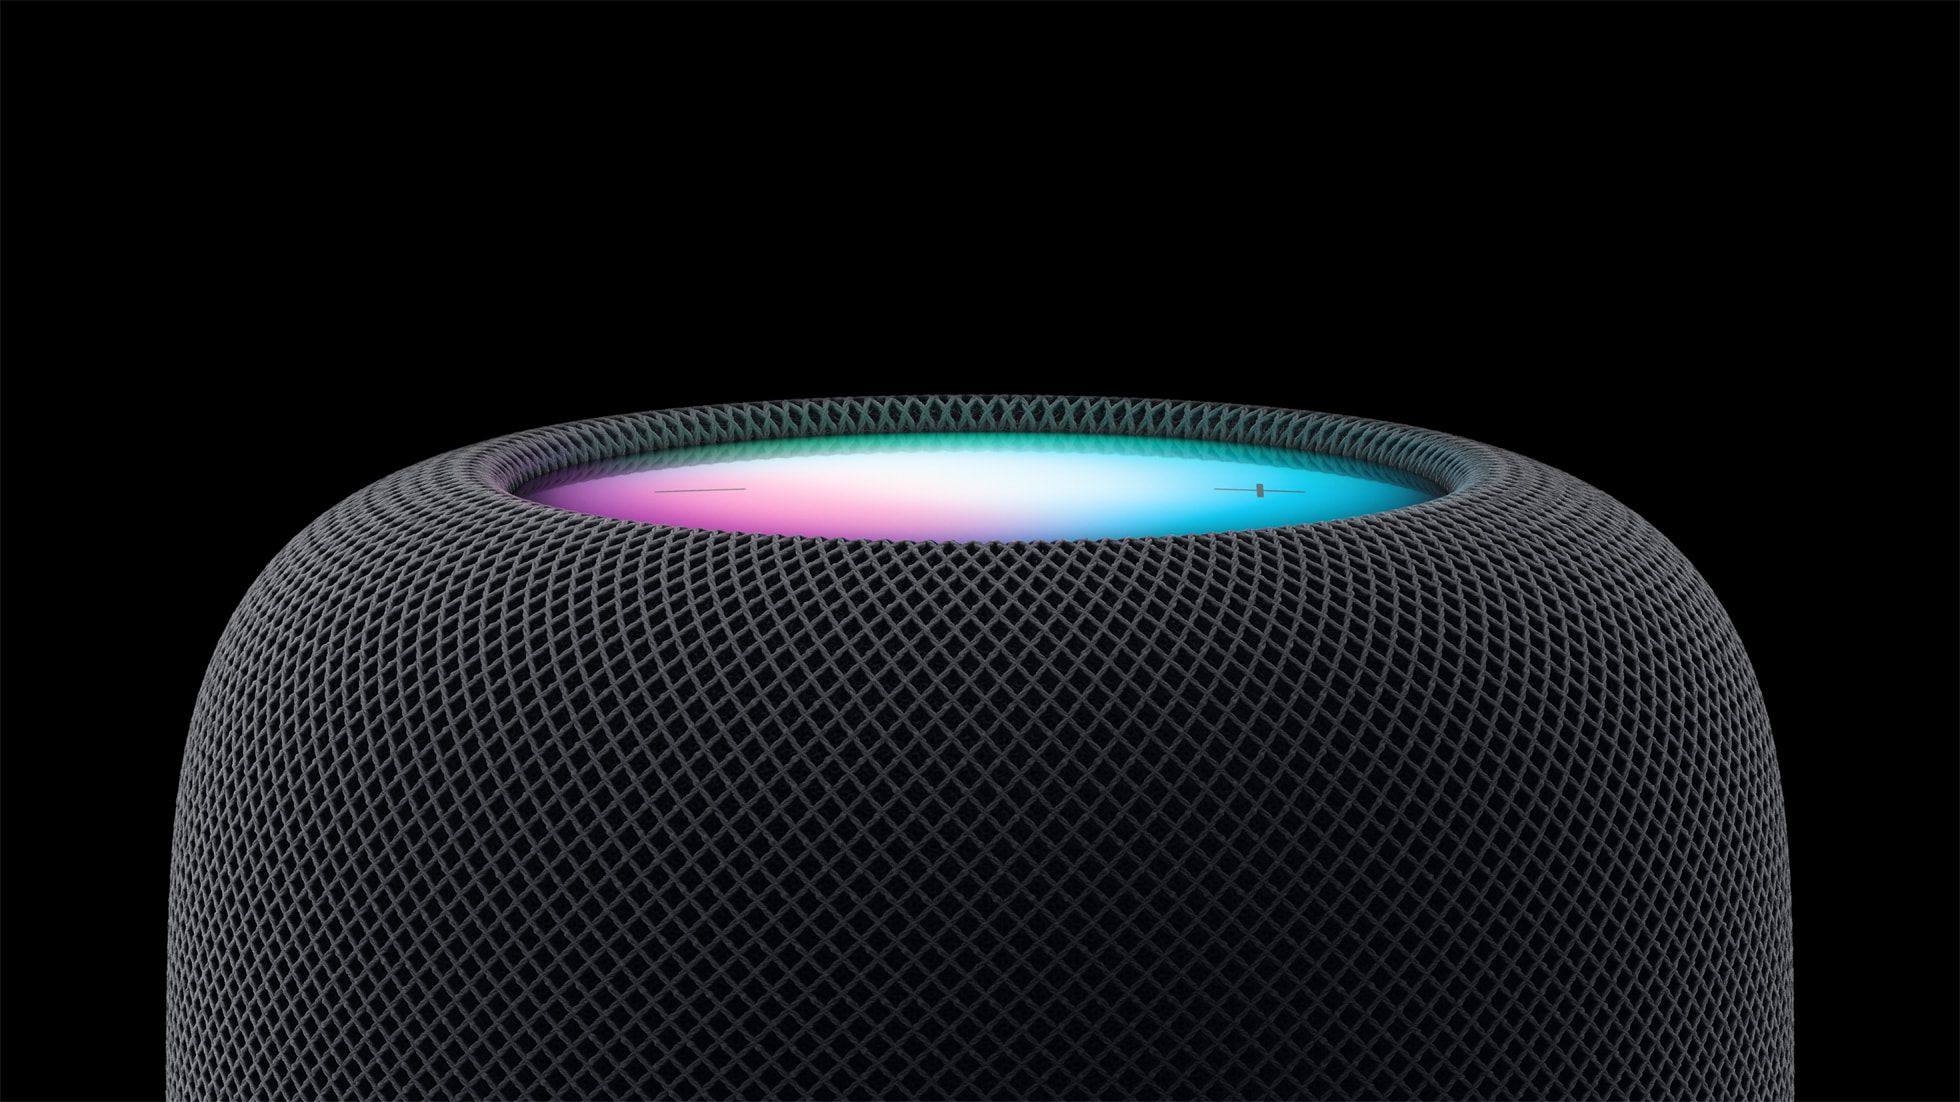 Apple、フルサイズのデザイン、S7 チップなどを搭載した 299 ドルの新しい HomePod を発表